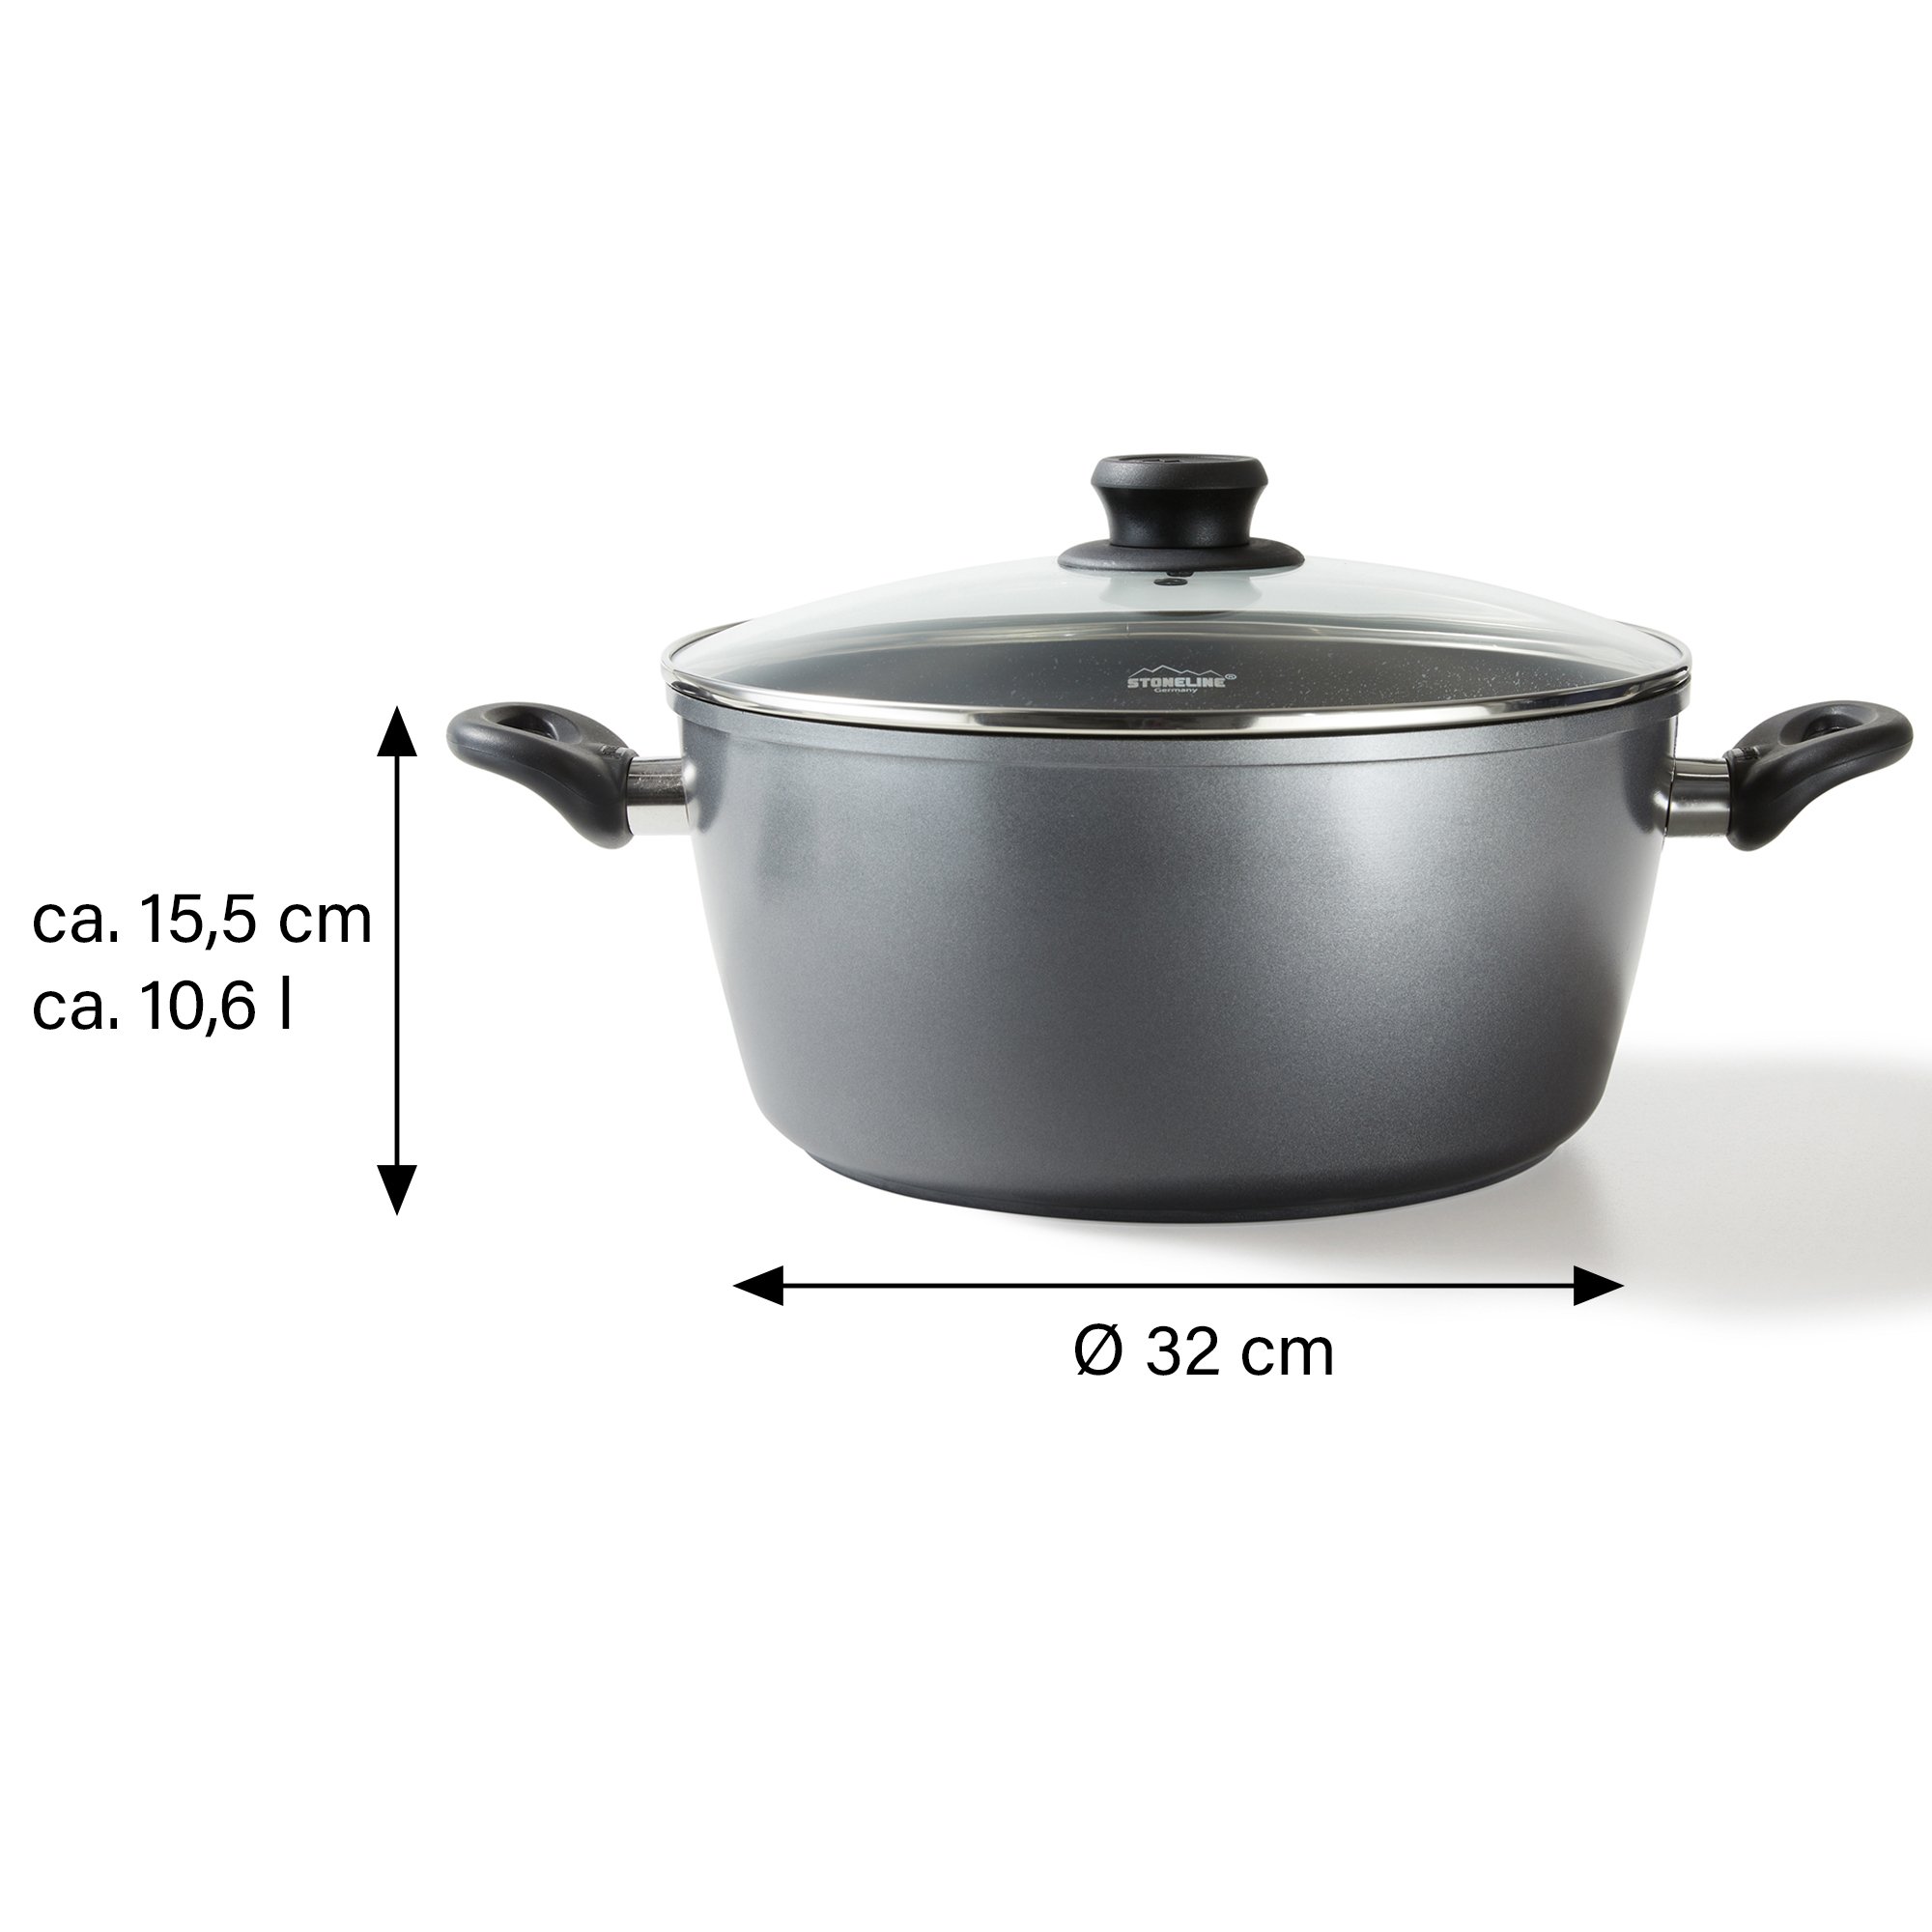 STONELINE® XXXL Cooking Pot 32 cm, with Lid, Large Non-Stick Pot | CLASSIC